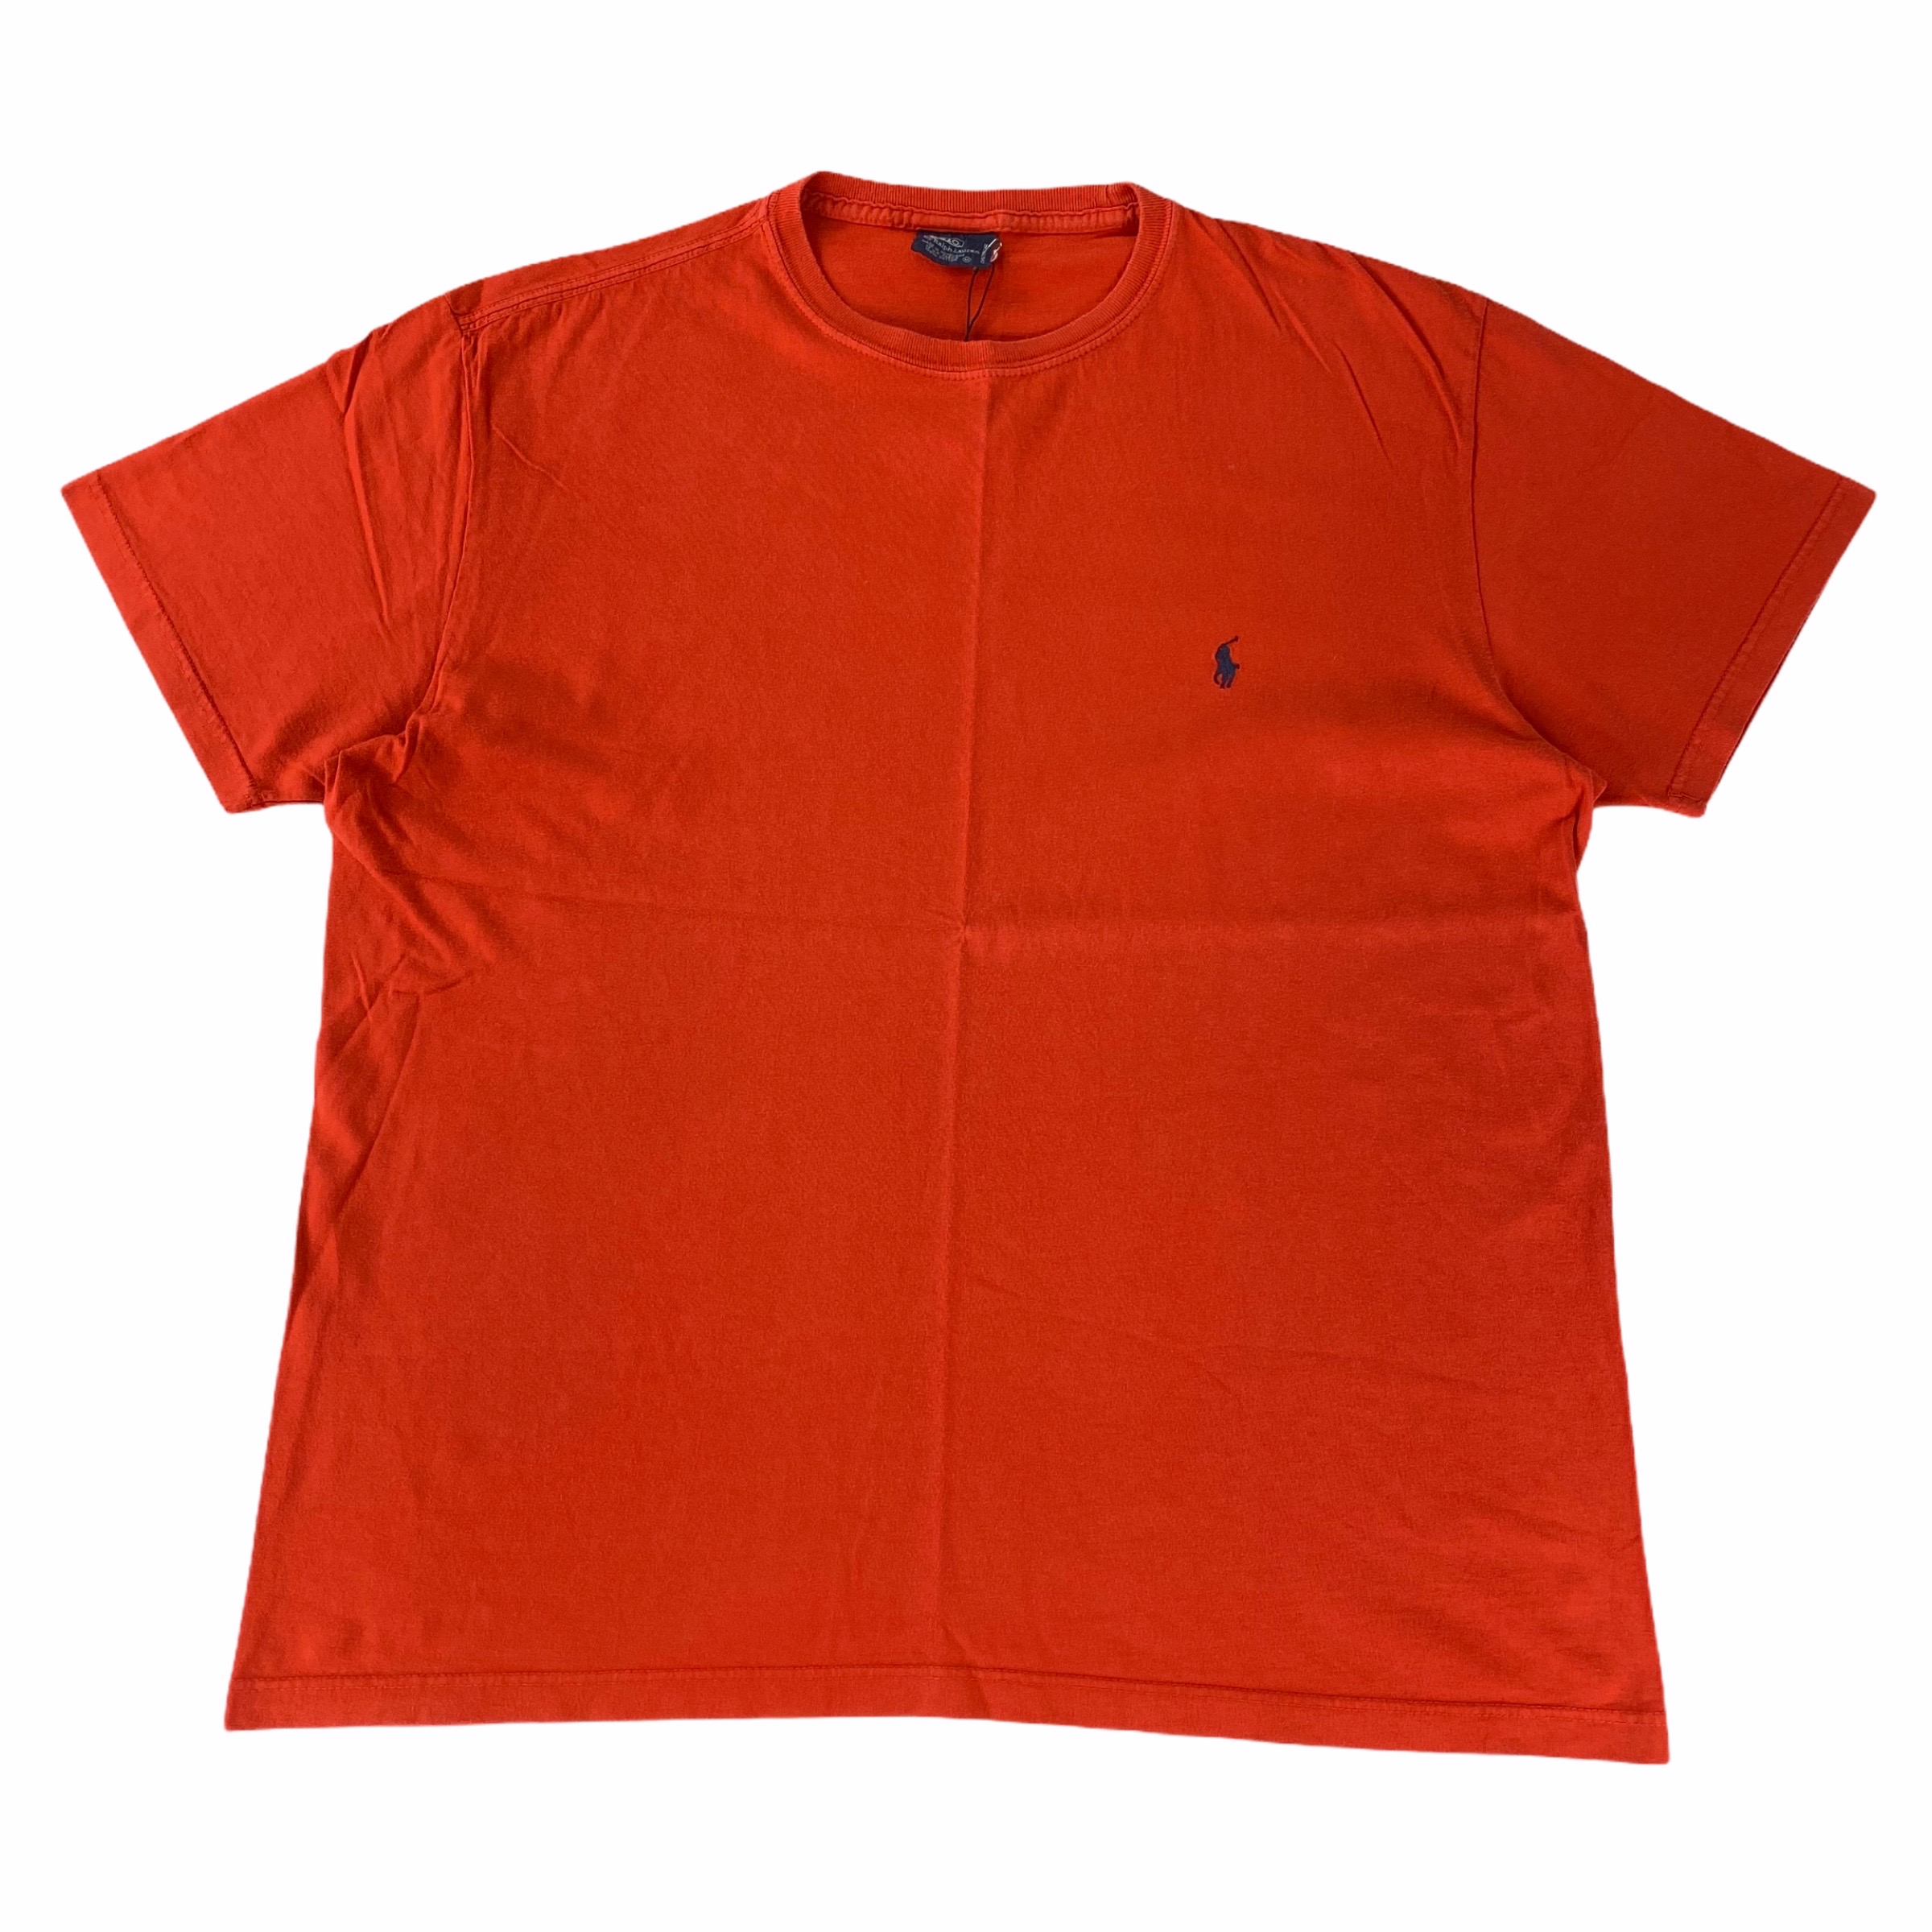 [Ralph Lauren] Orange Tshirt - Size M